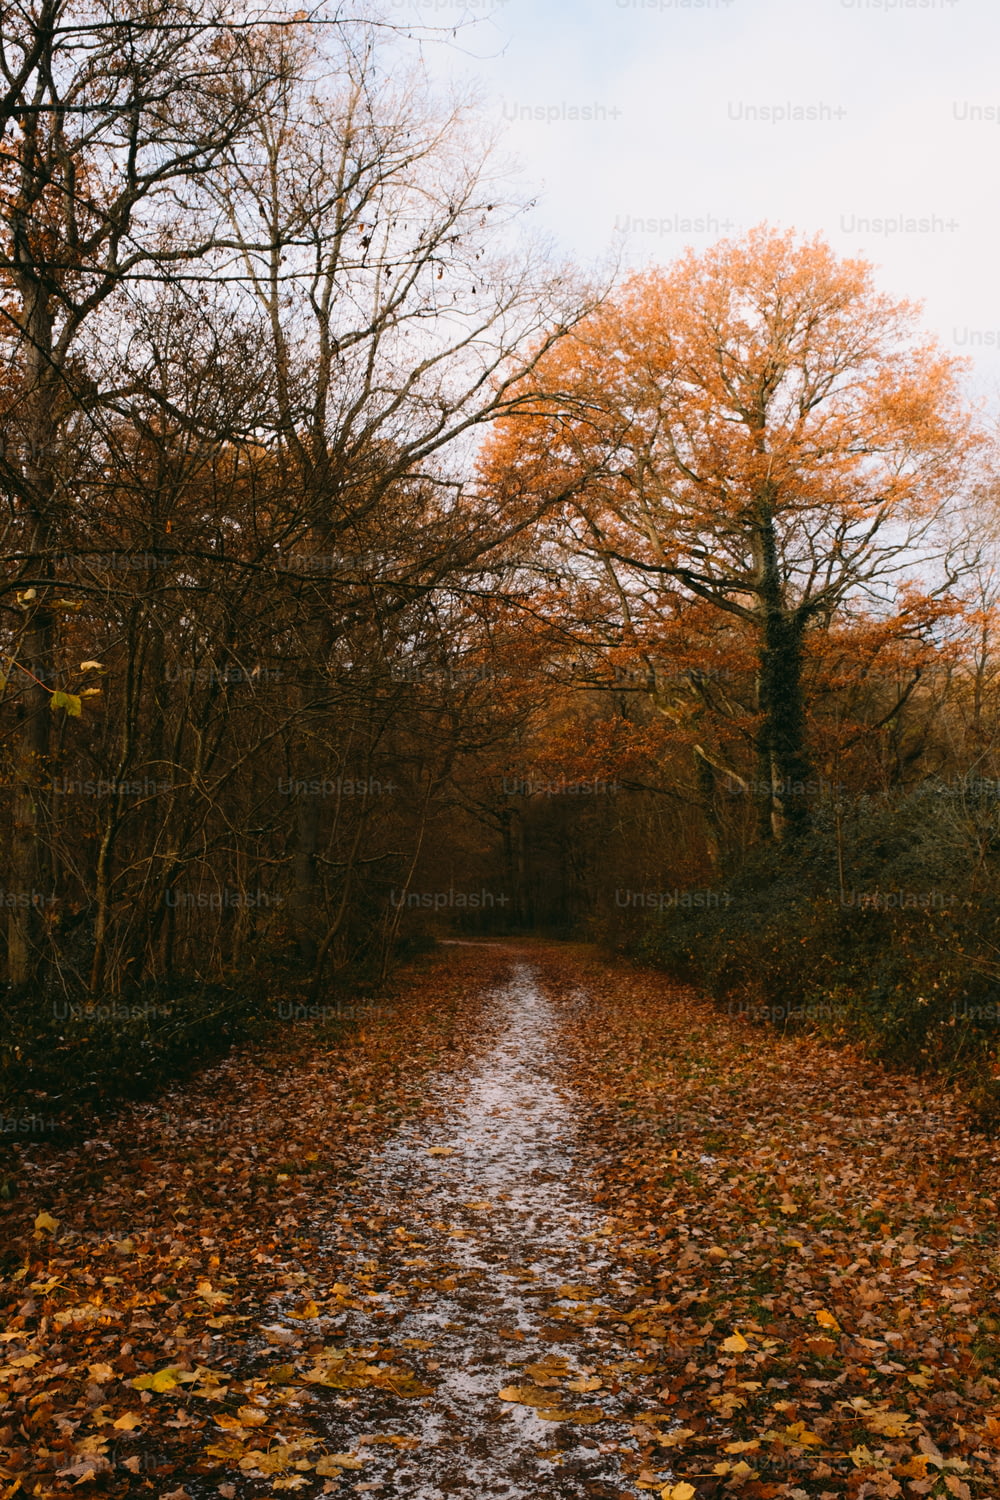 Un camino de tierra rodeado de árboles cubiertos de hojas